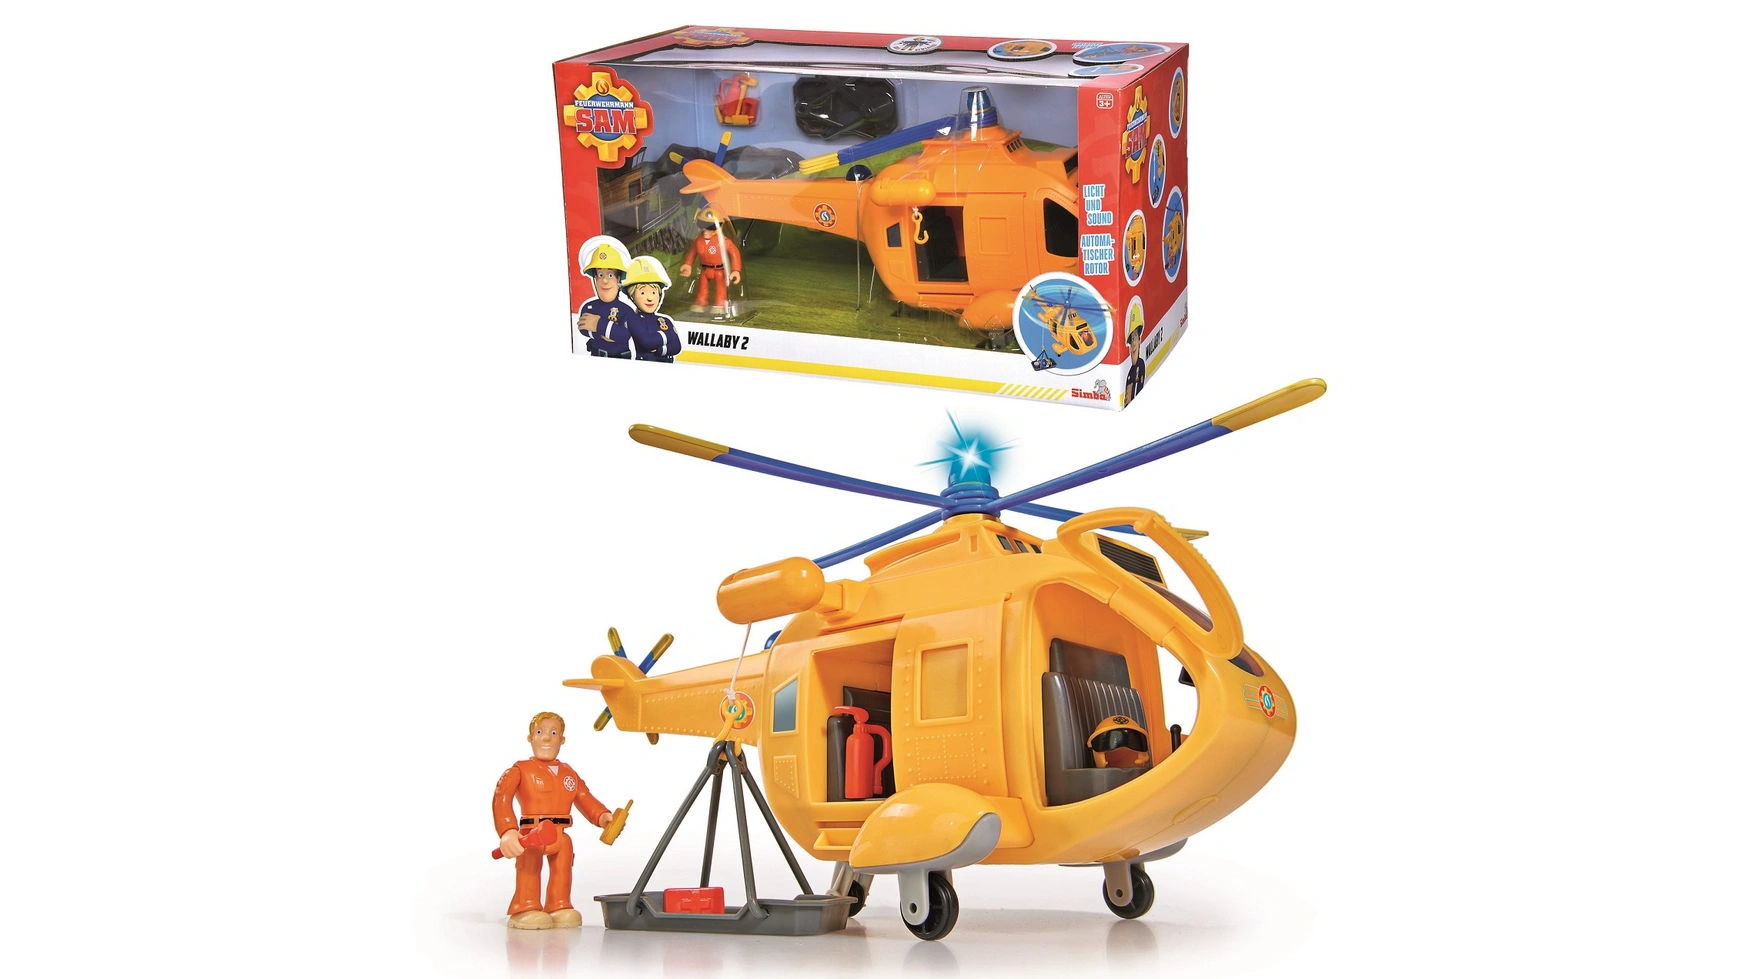 Пожарный сэм вертолет валлаби 2 Simba